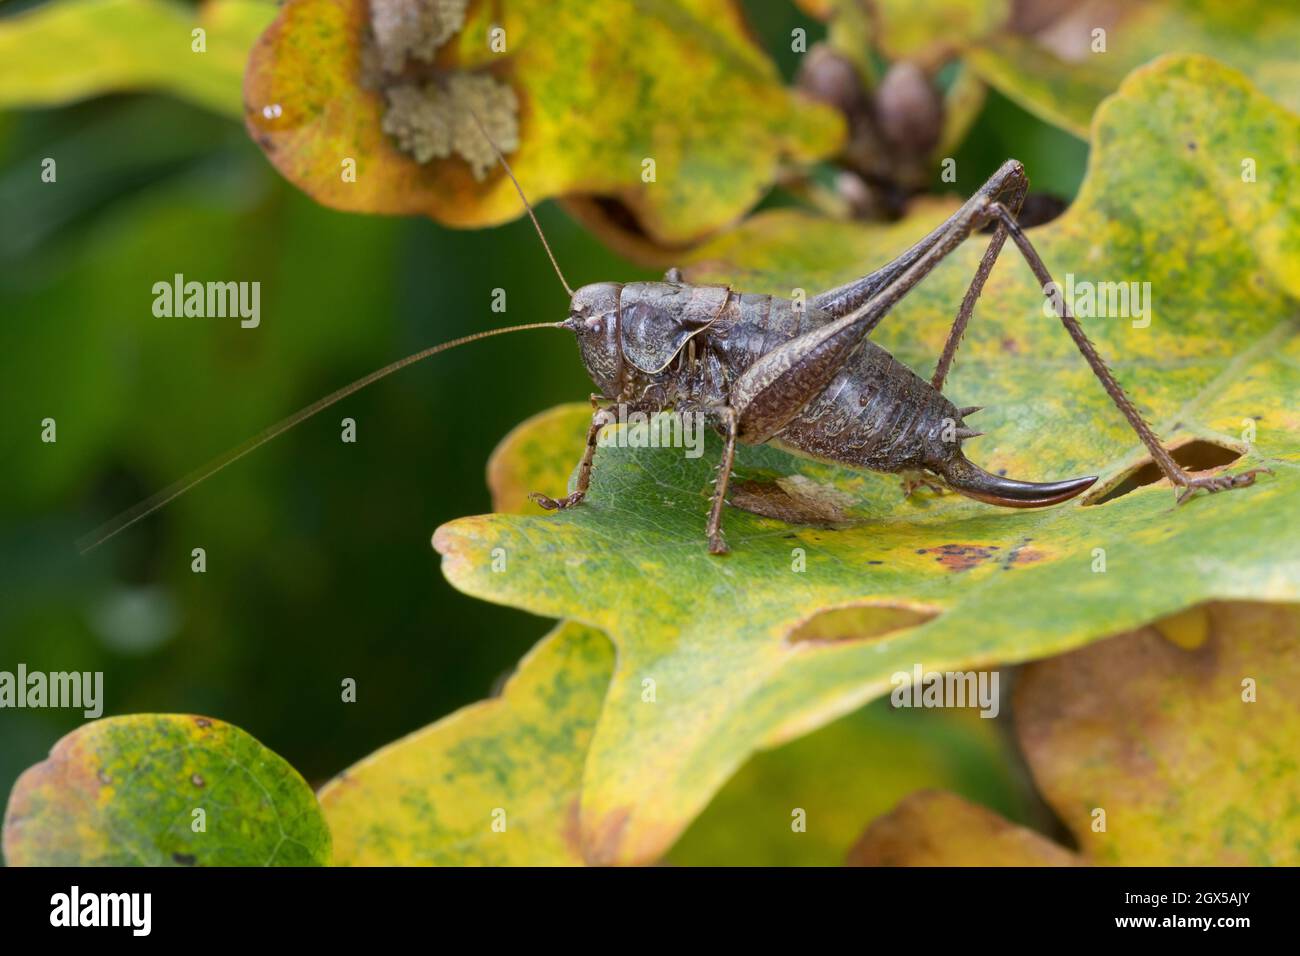 Gewöhnliche Strauchschrecke, Gemeine Strauchschrecke, Strauchschrecke, Weibchen, Pholidoptera griseoaptera, dark bushcricket, dark bush-cricket, femal Stock Photo